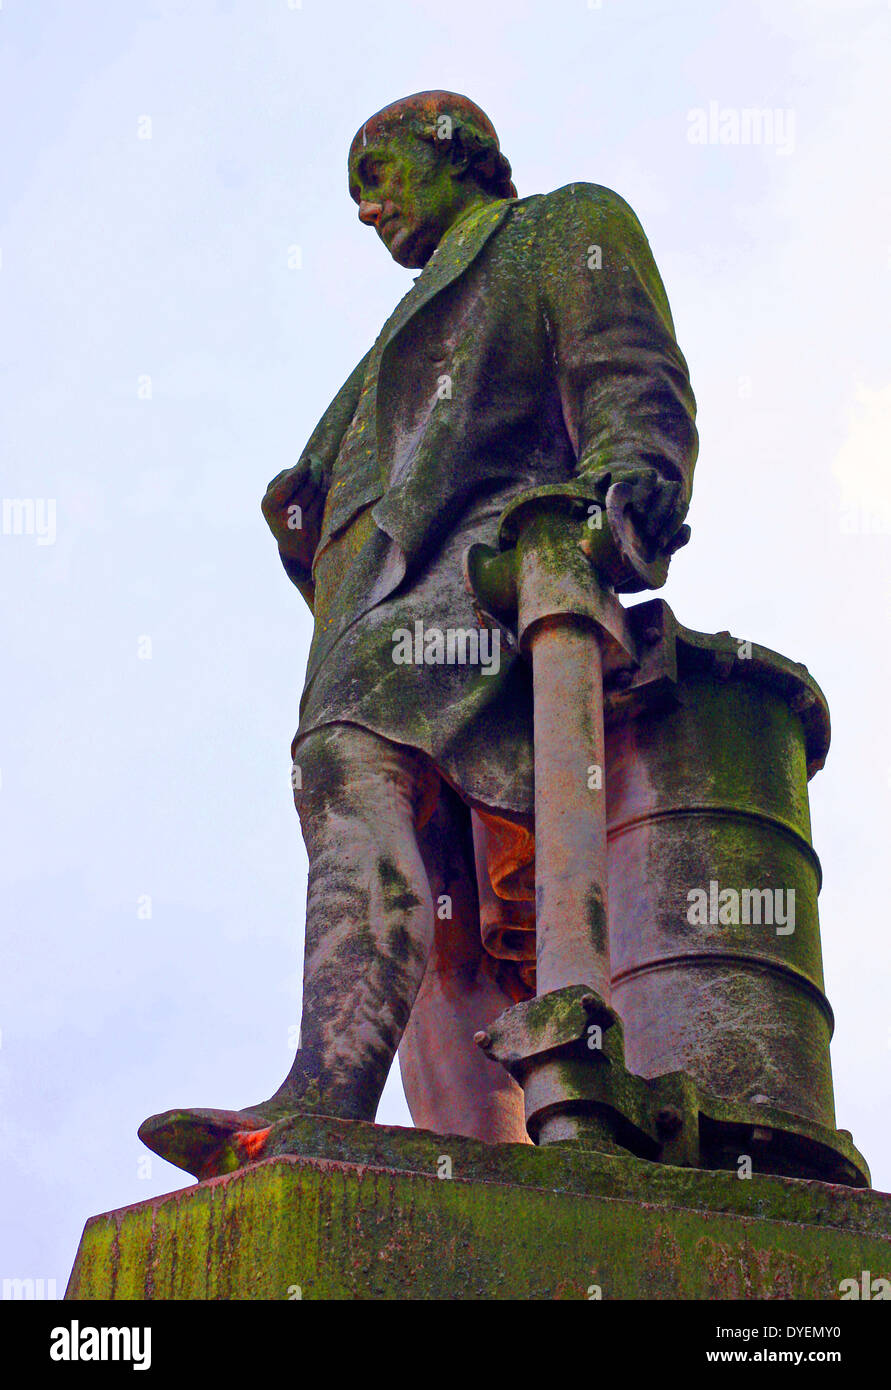 James Watt estatua, en Chamberlain Square, fuera de la Biblioteca Central de Birmingham, Birmingham. 1868 por Alexander Munro. Realizado en mármol siciliano. James Watt, 1736 - 1819 fue un inventor e ingeniero mecánico escocés cuyas mejoras al motor de vapor Newcomen eran fundamentales a los cambios producidos por la Revolución Industrial Foto de stock